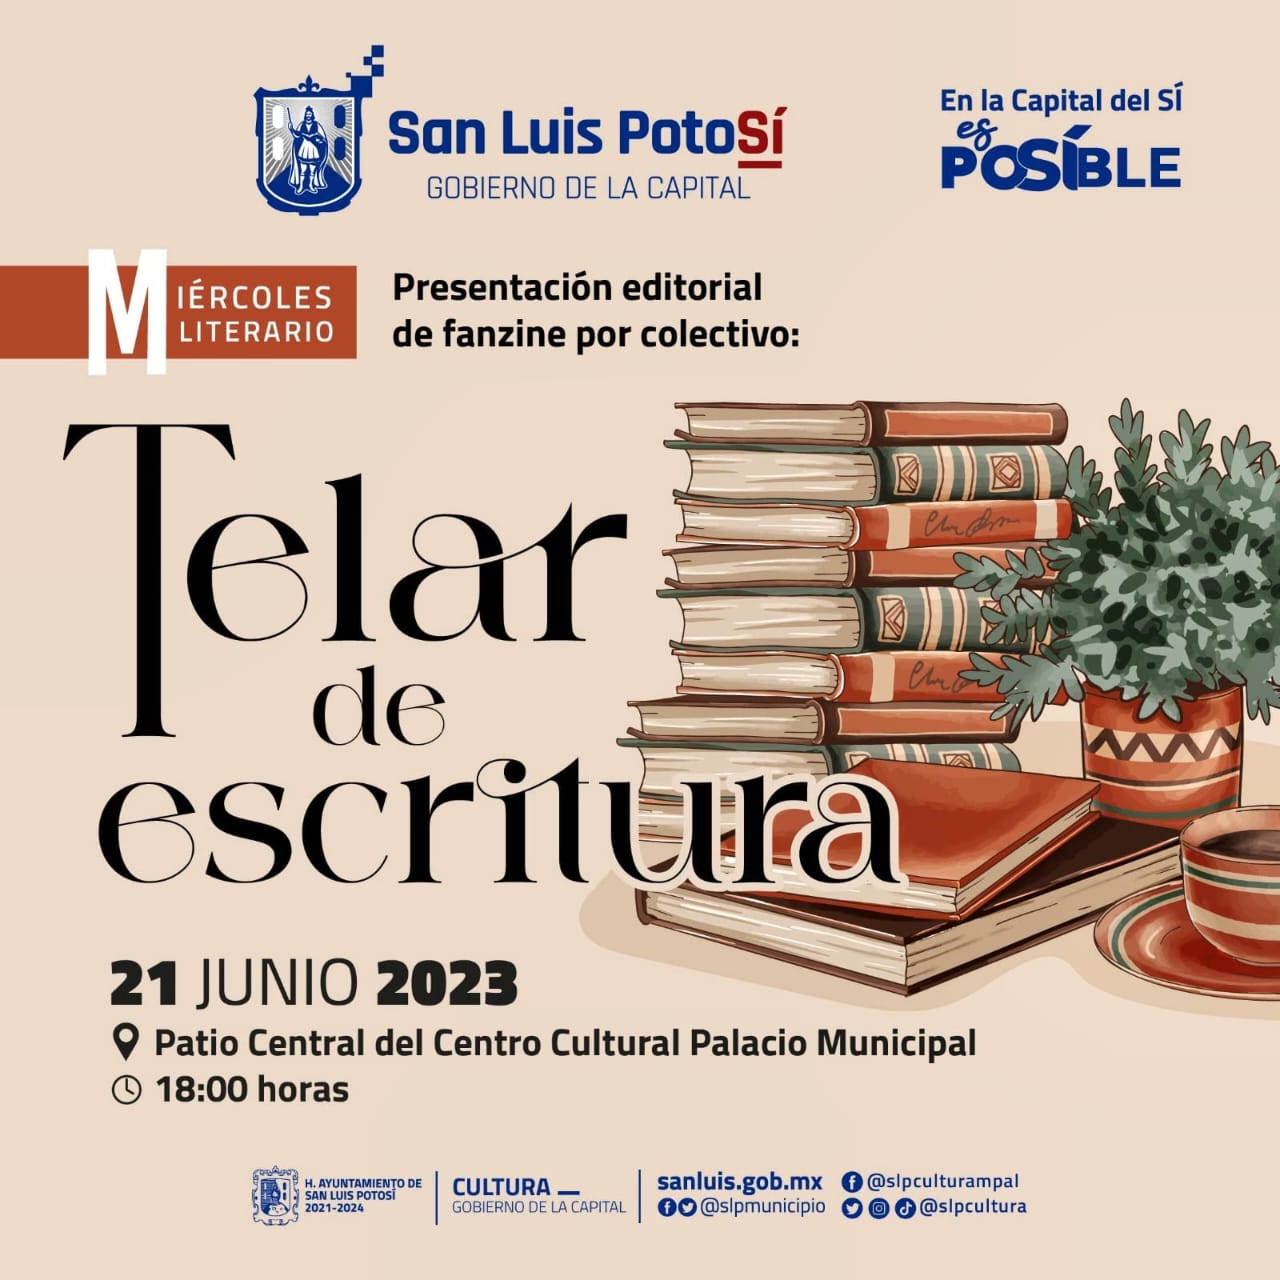 El Gobierno de la Capital presenta el fanzine editorial del colectivo Telar de Escritura, una propuesta de ciudadanos que gustan del arte.